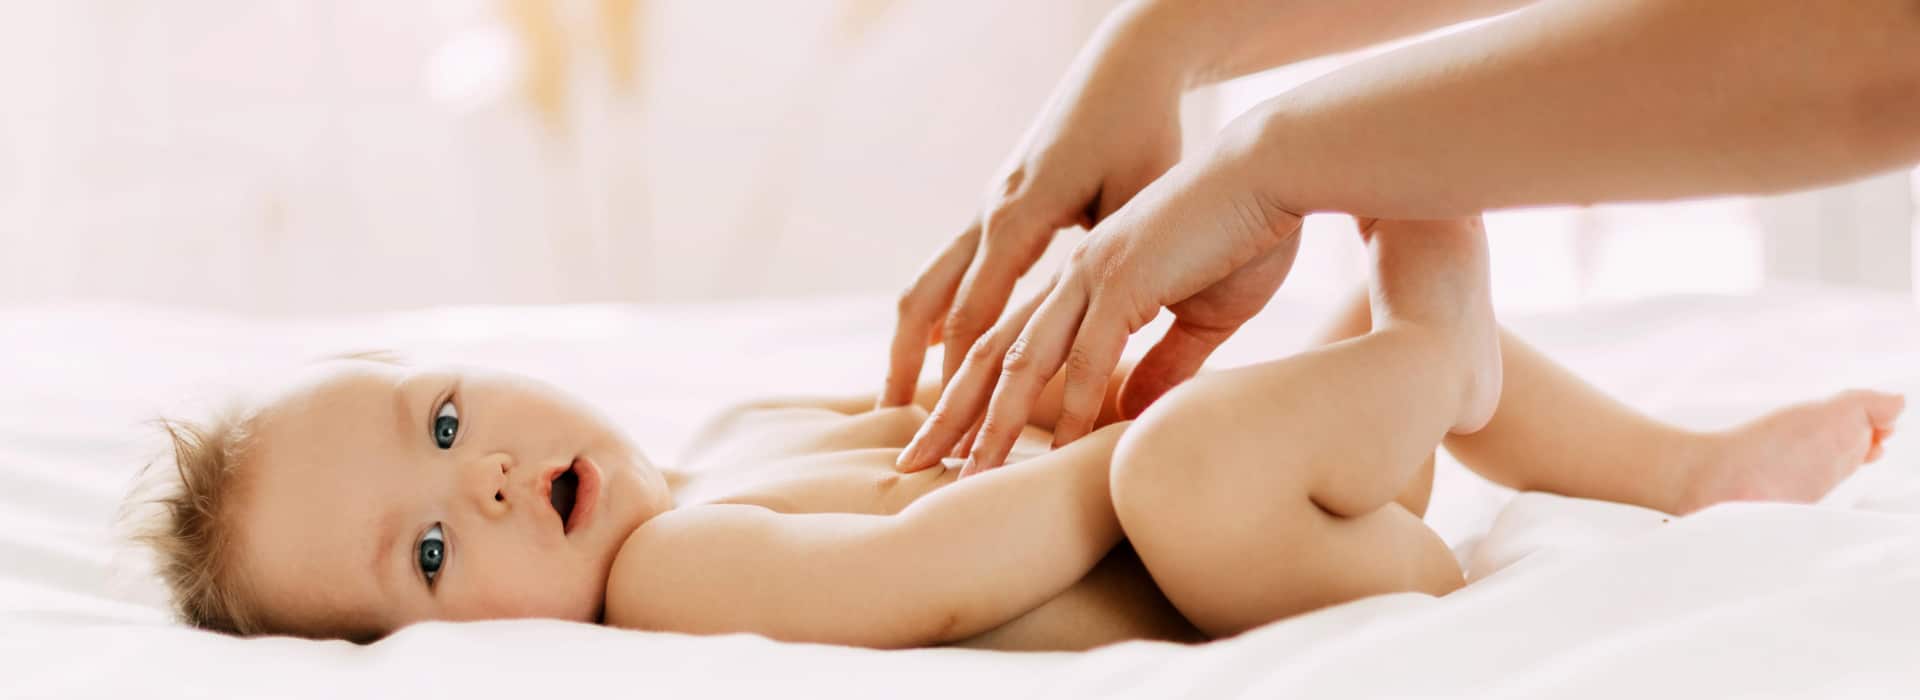 Massaggio neonatale: tutto su una pratica antichissima